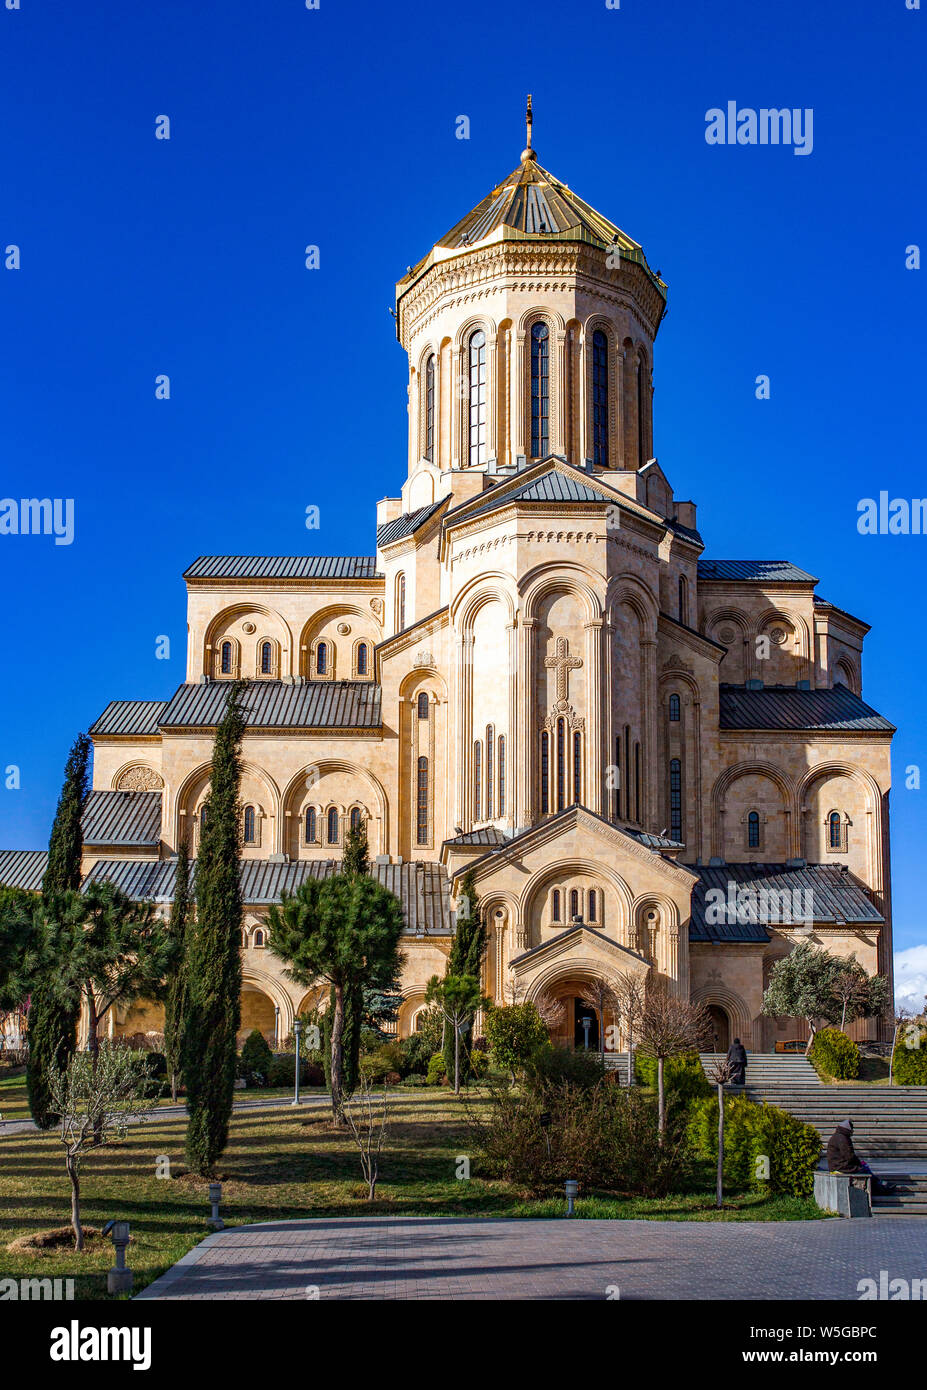 La Cattedrale della Trinità di Tbilisi. Riccamente ornata, sacrale architettura ortodossa in Georgia. Foto Stock